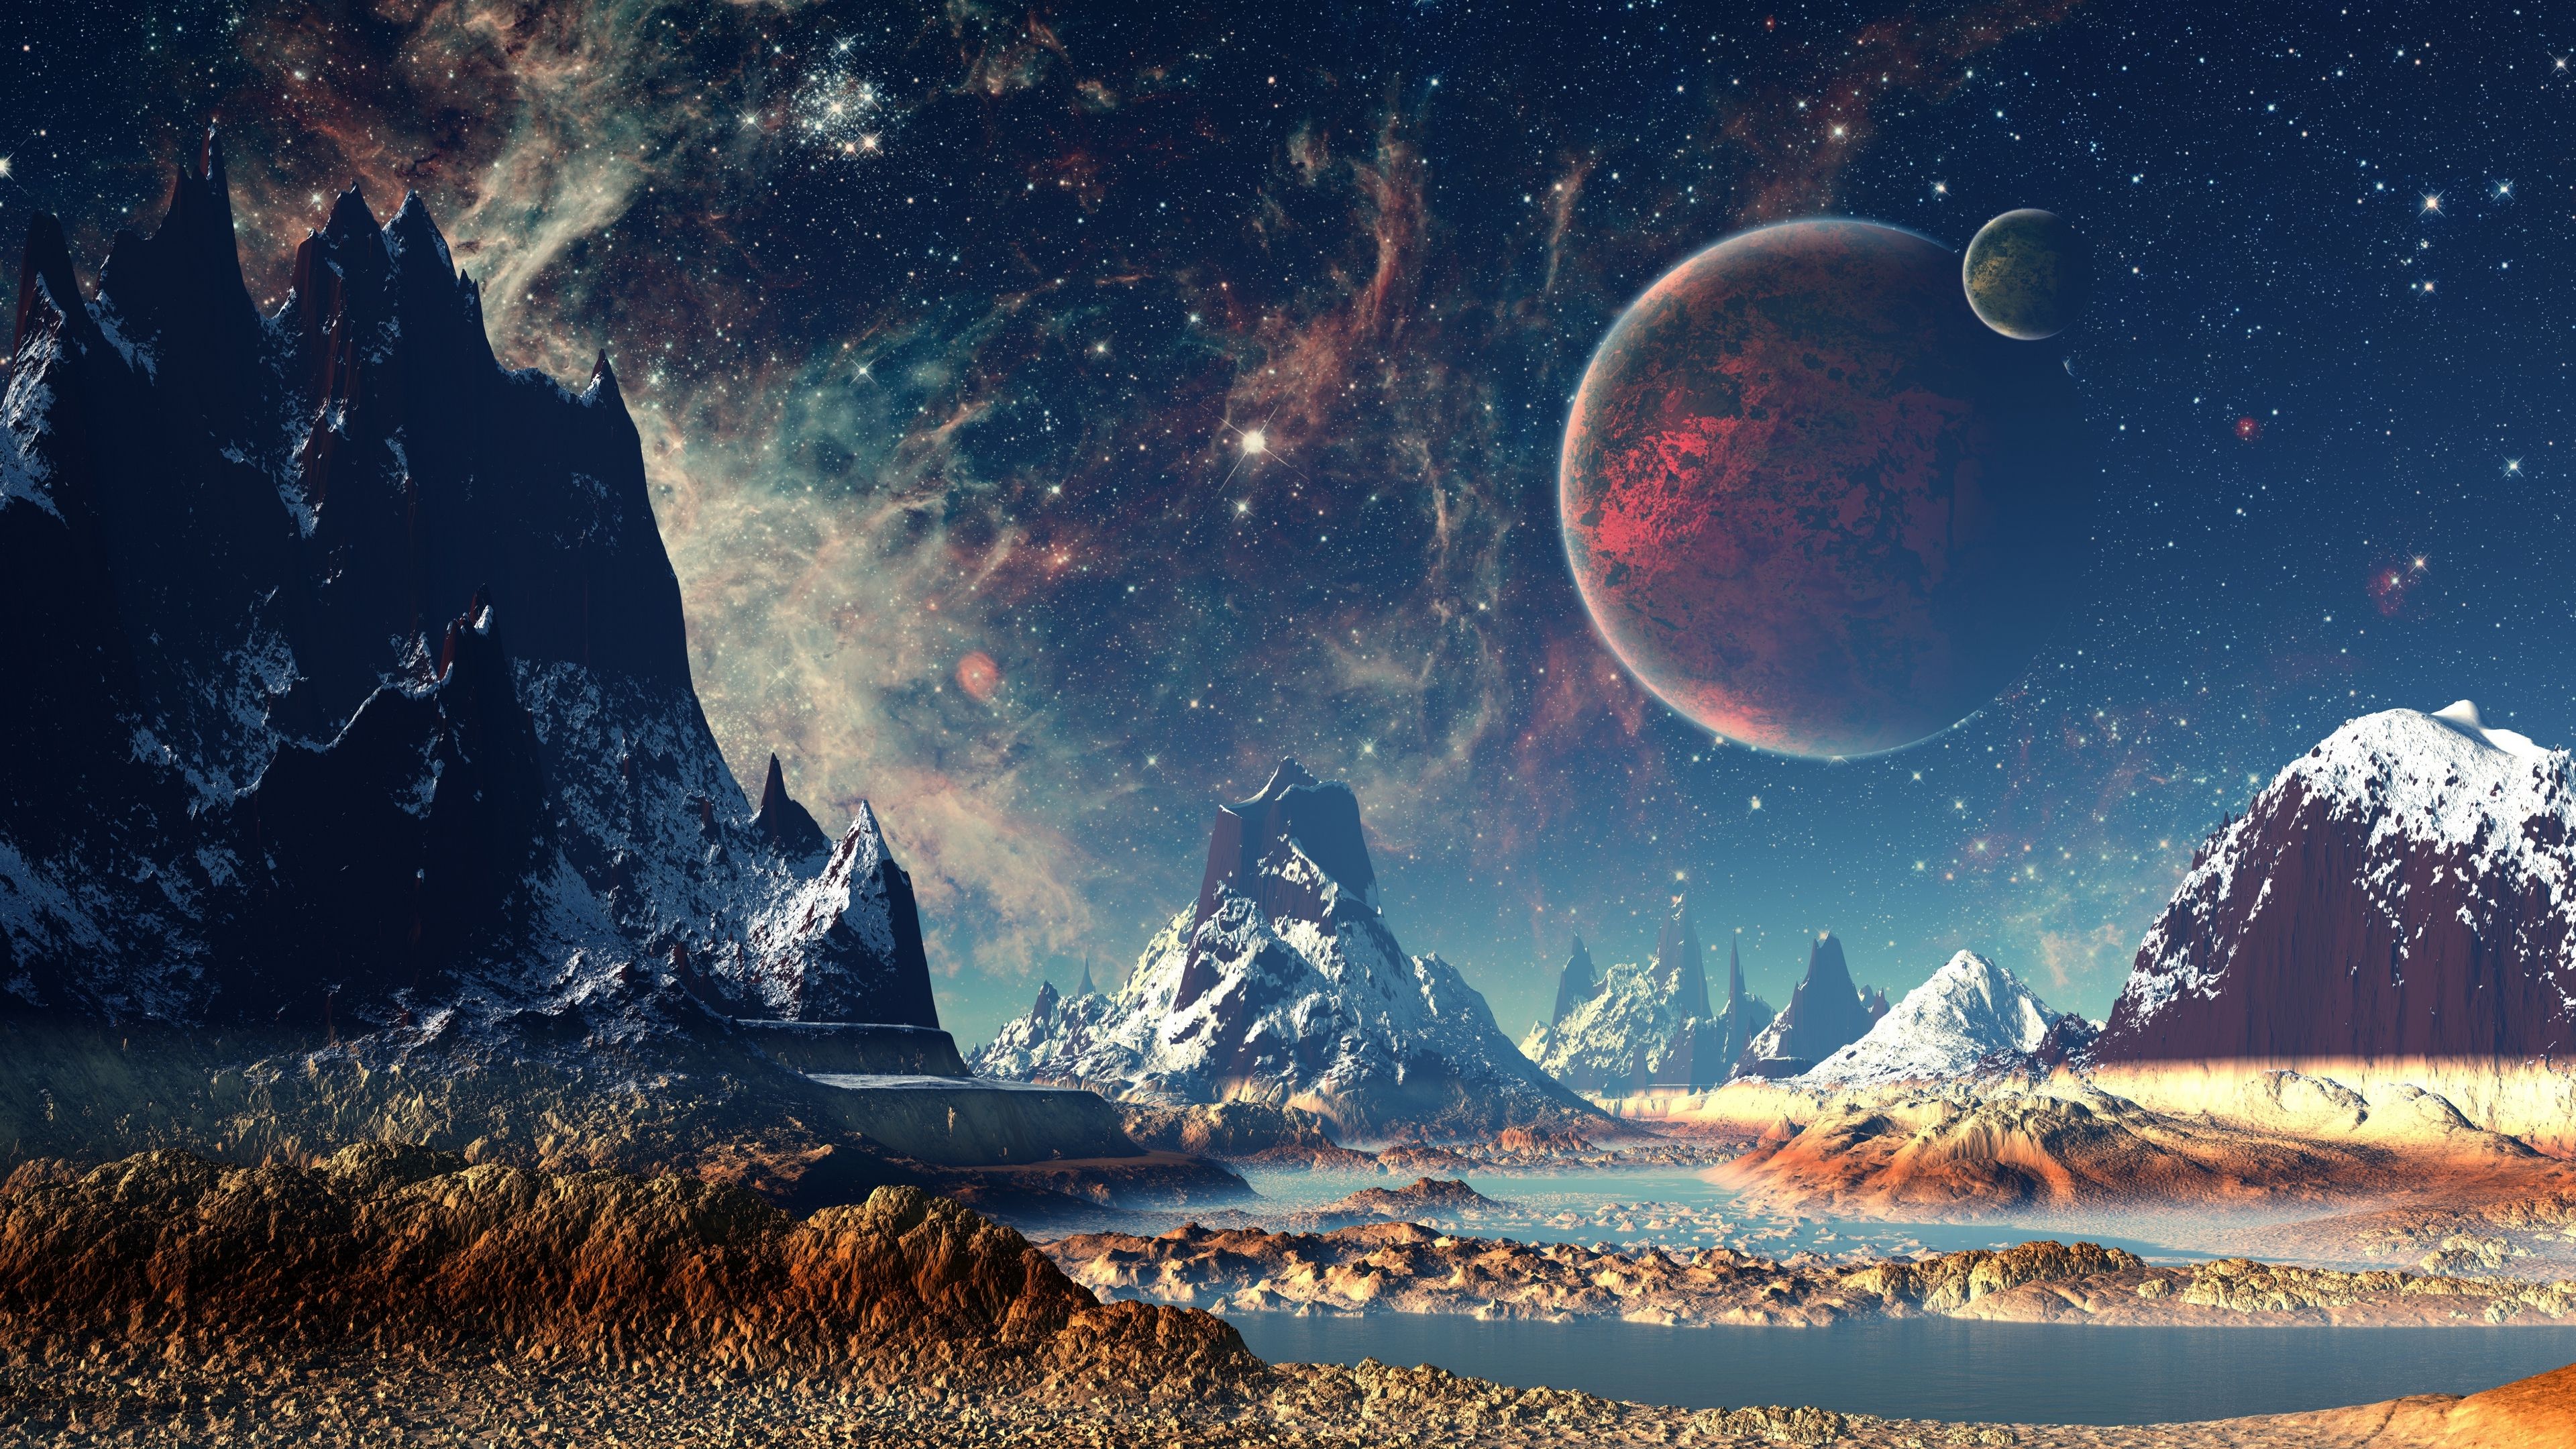 Sci Fi Landscape 2021 Hd Desktop Art Wallpapers